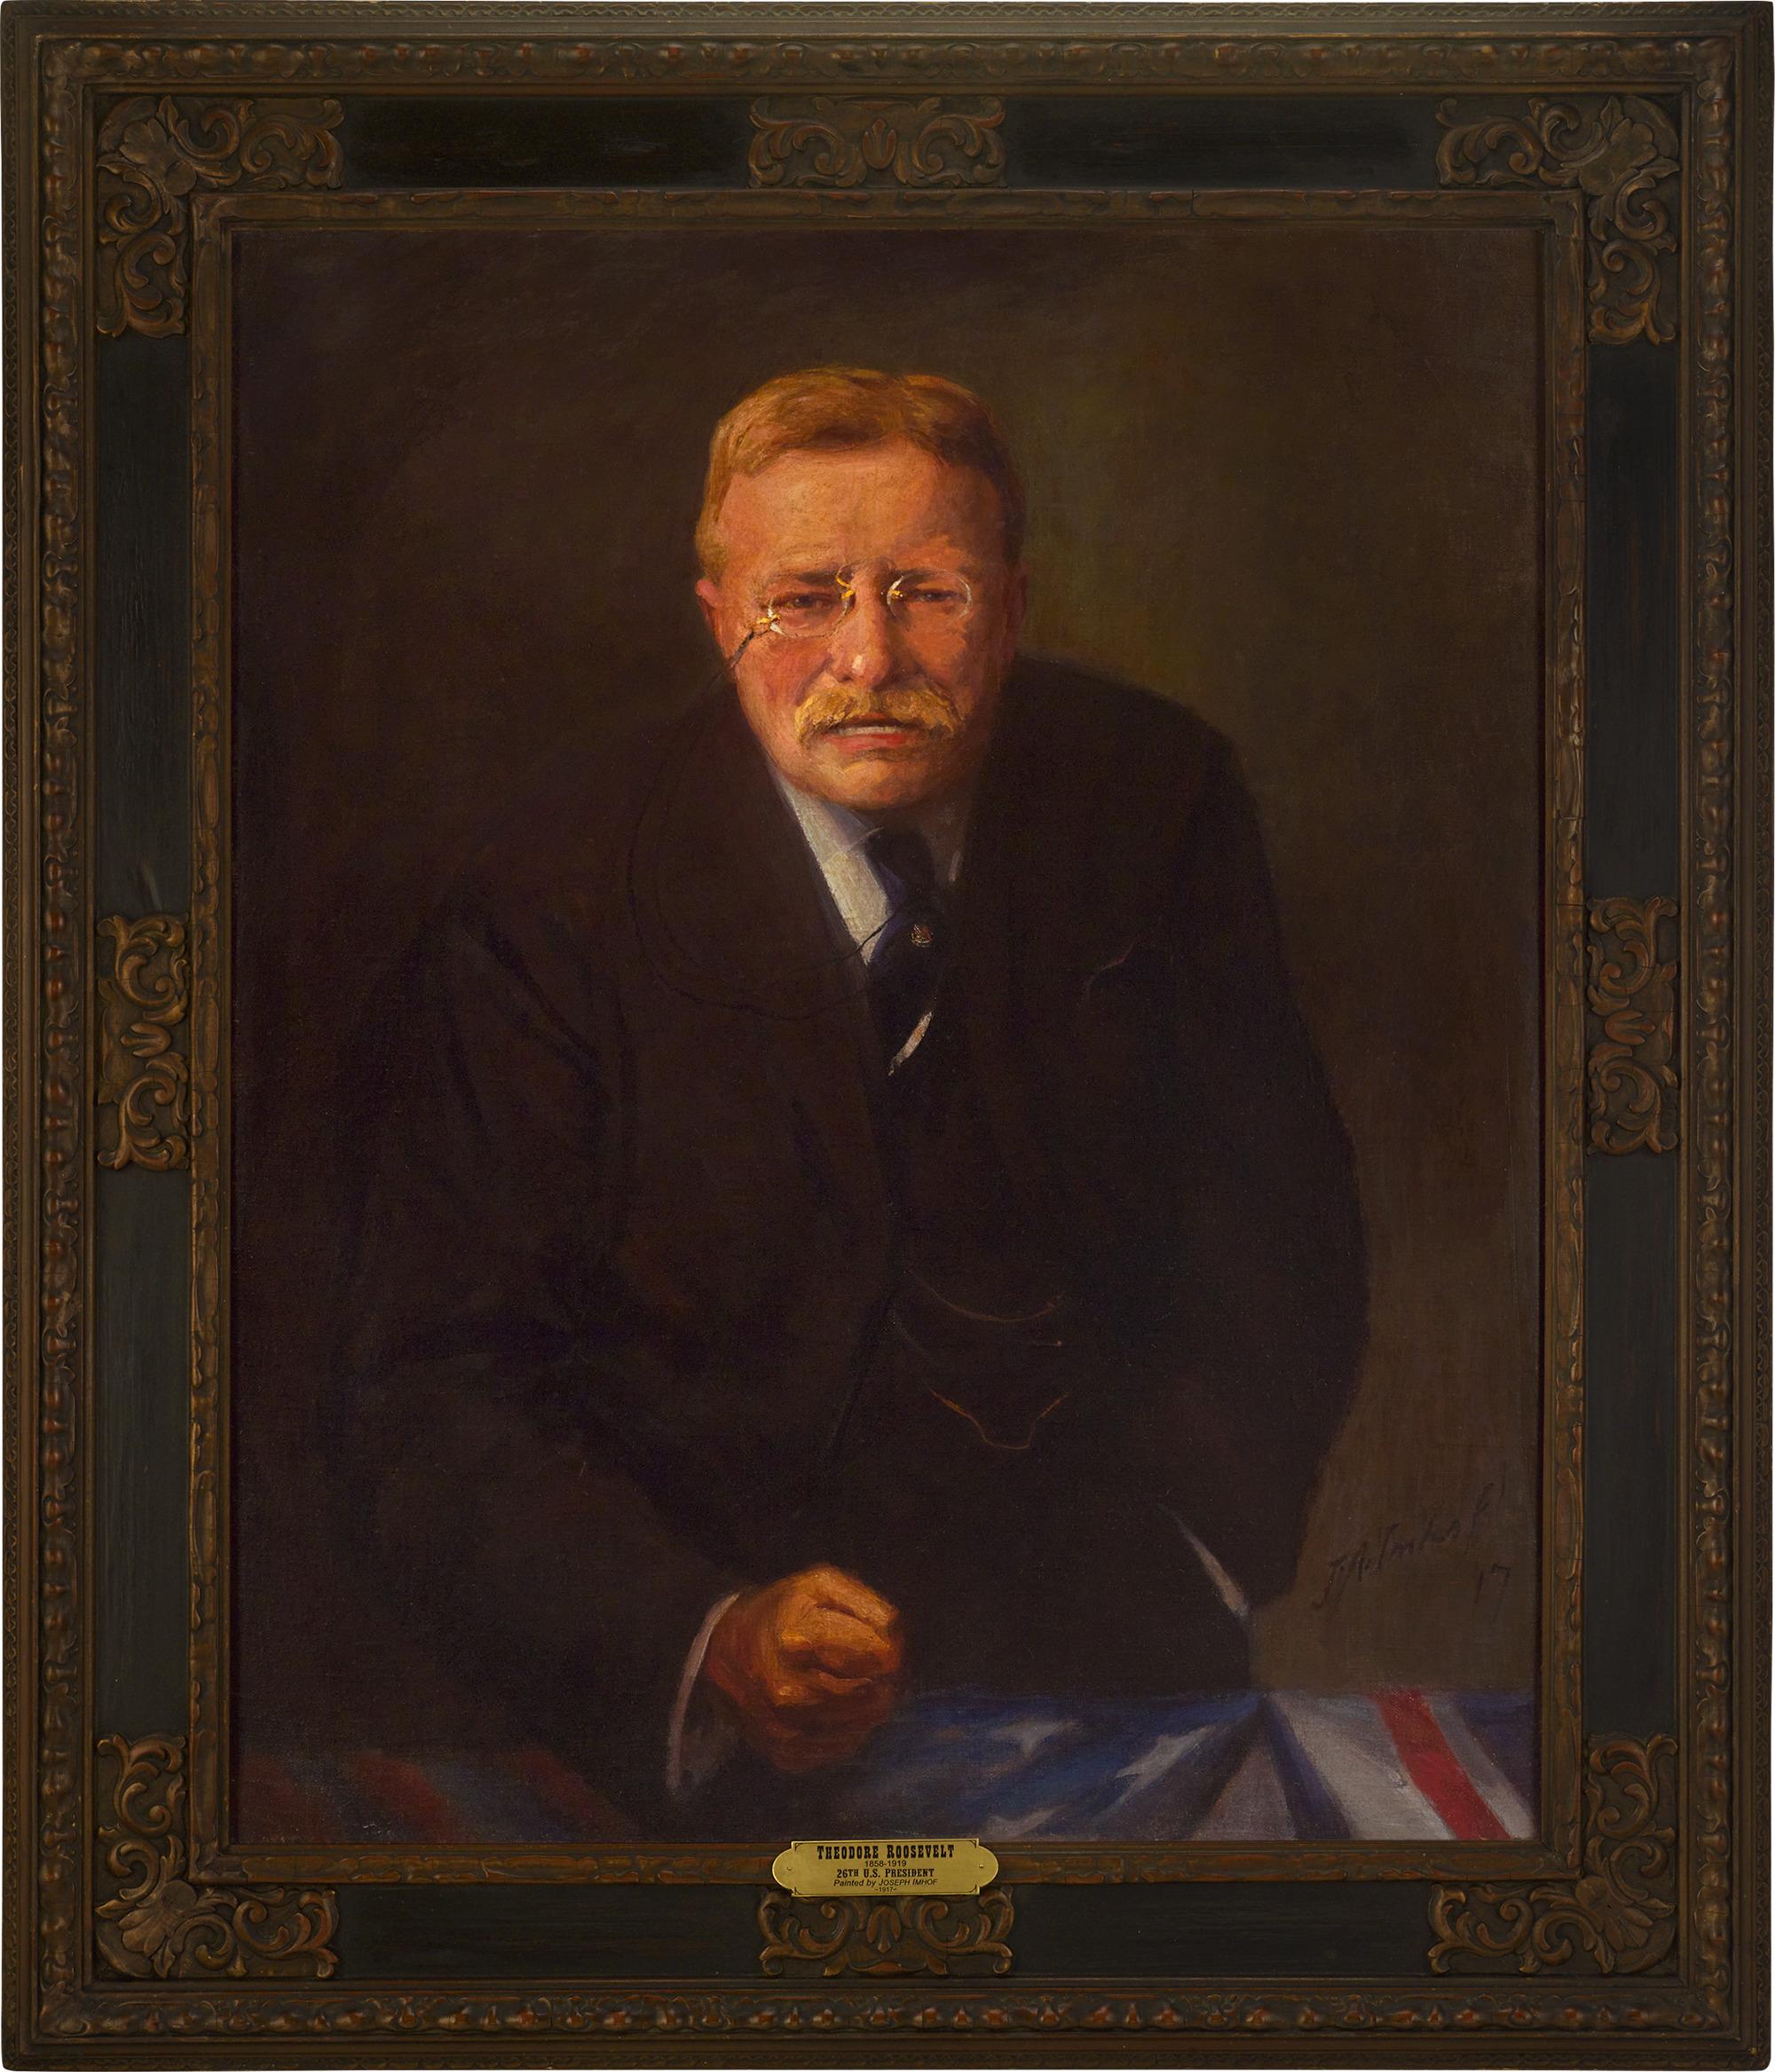 Porträt von Theodore Roosevelt von Joseph A. Imhof – Painting von Joseph Adam Imhof